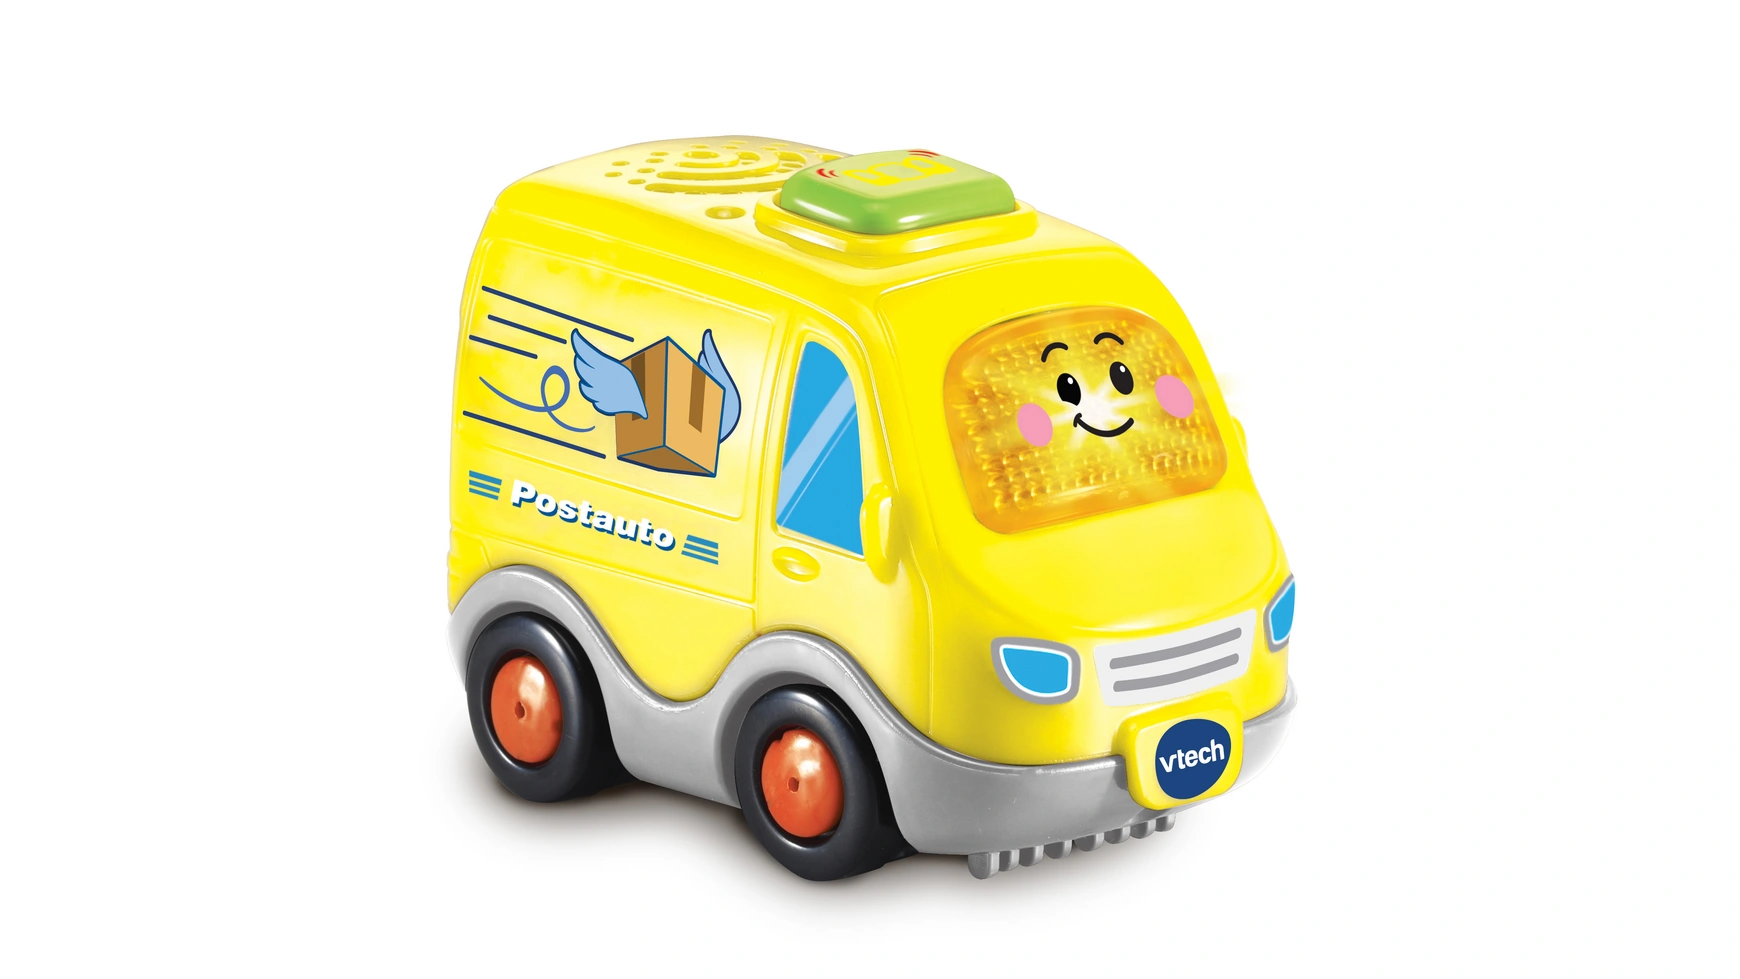 VTech Tut Tut Baby Flitzer Postbus, интерактивная детская машинка vtech tut tut baby flitzer школьный автобус cocomelon коди включая железную дорогу